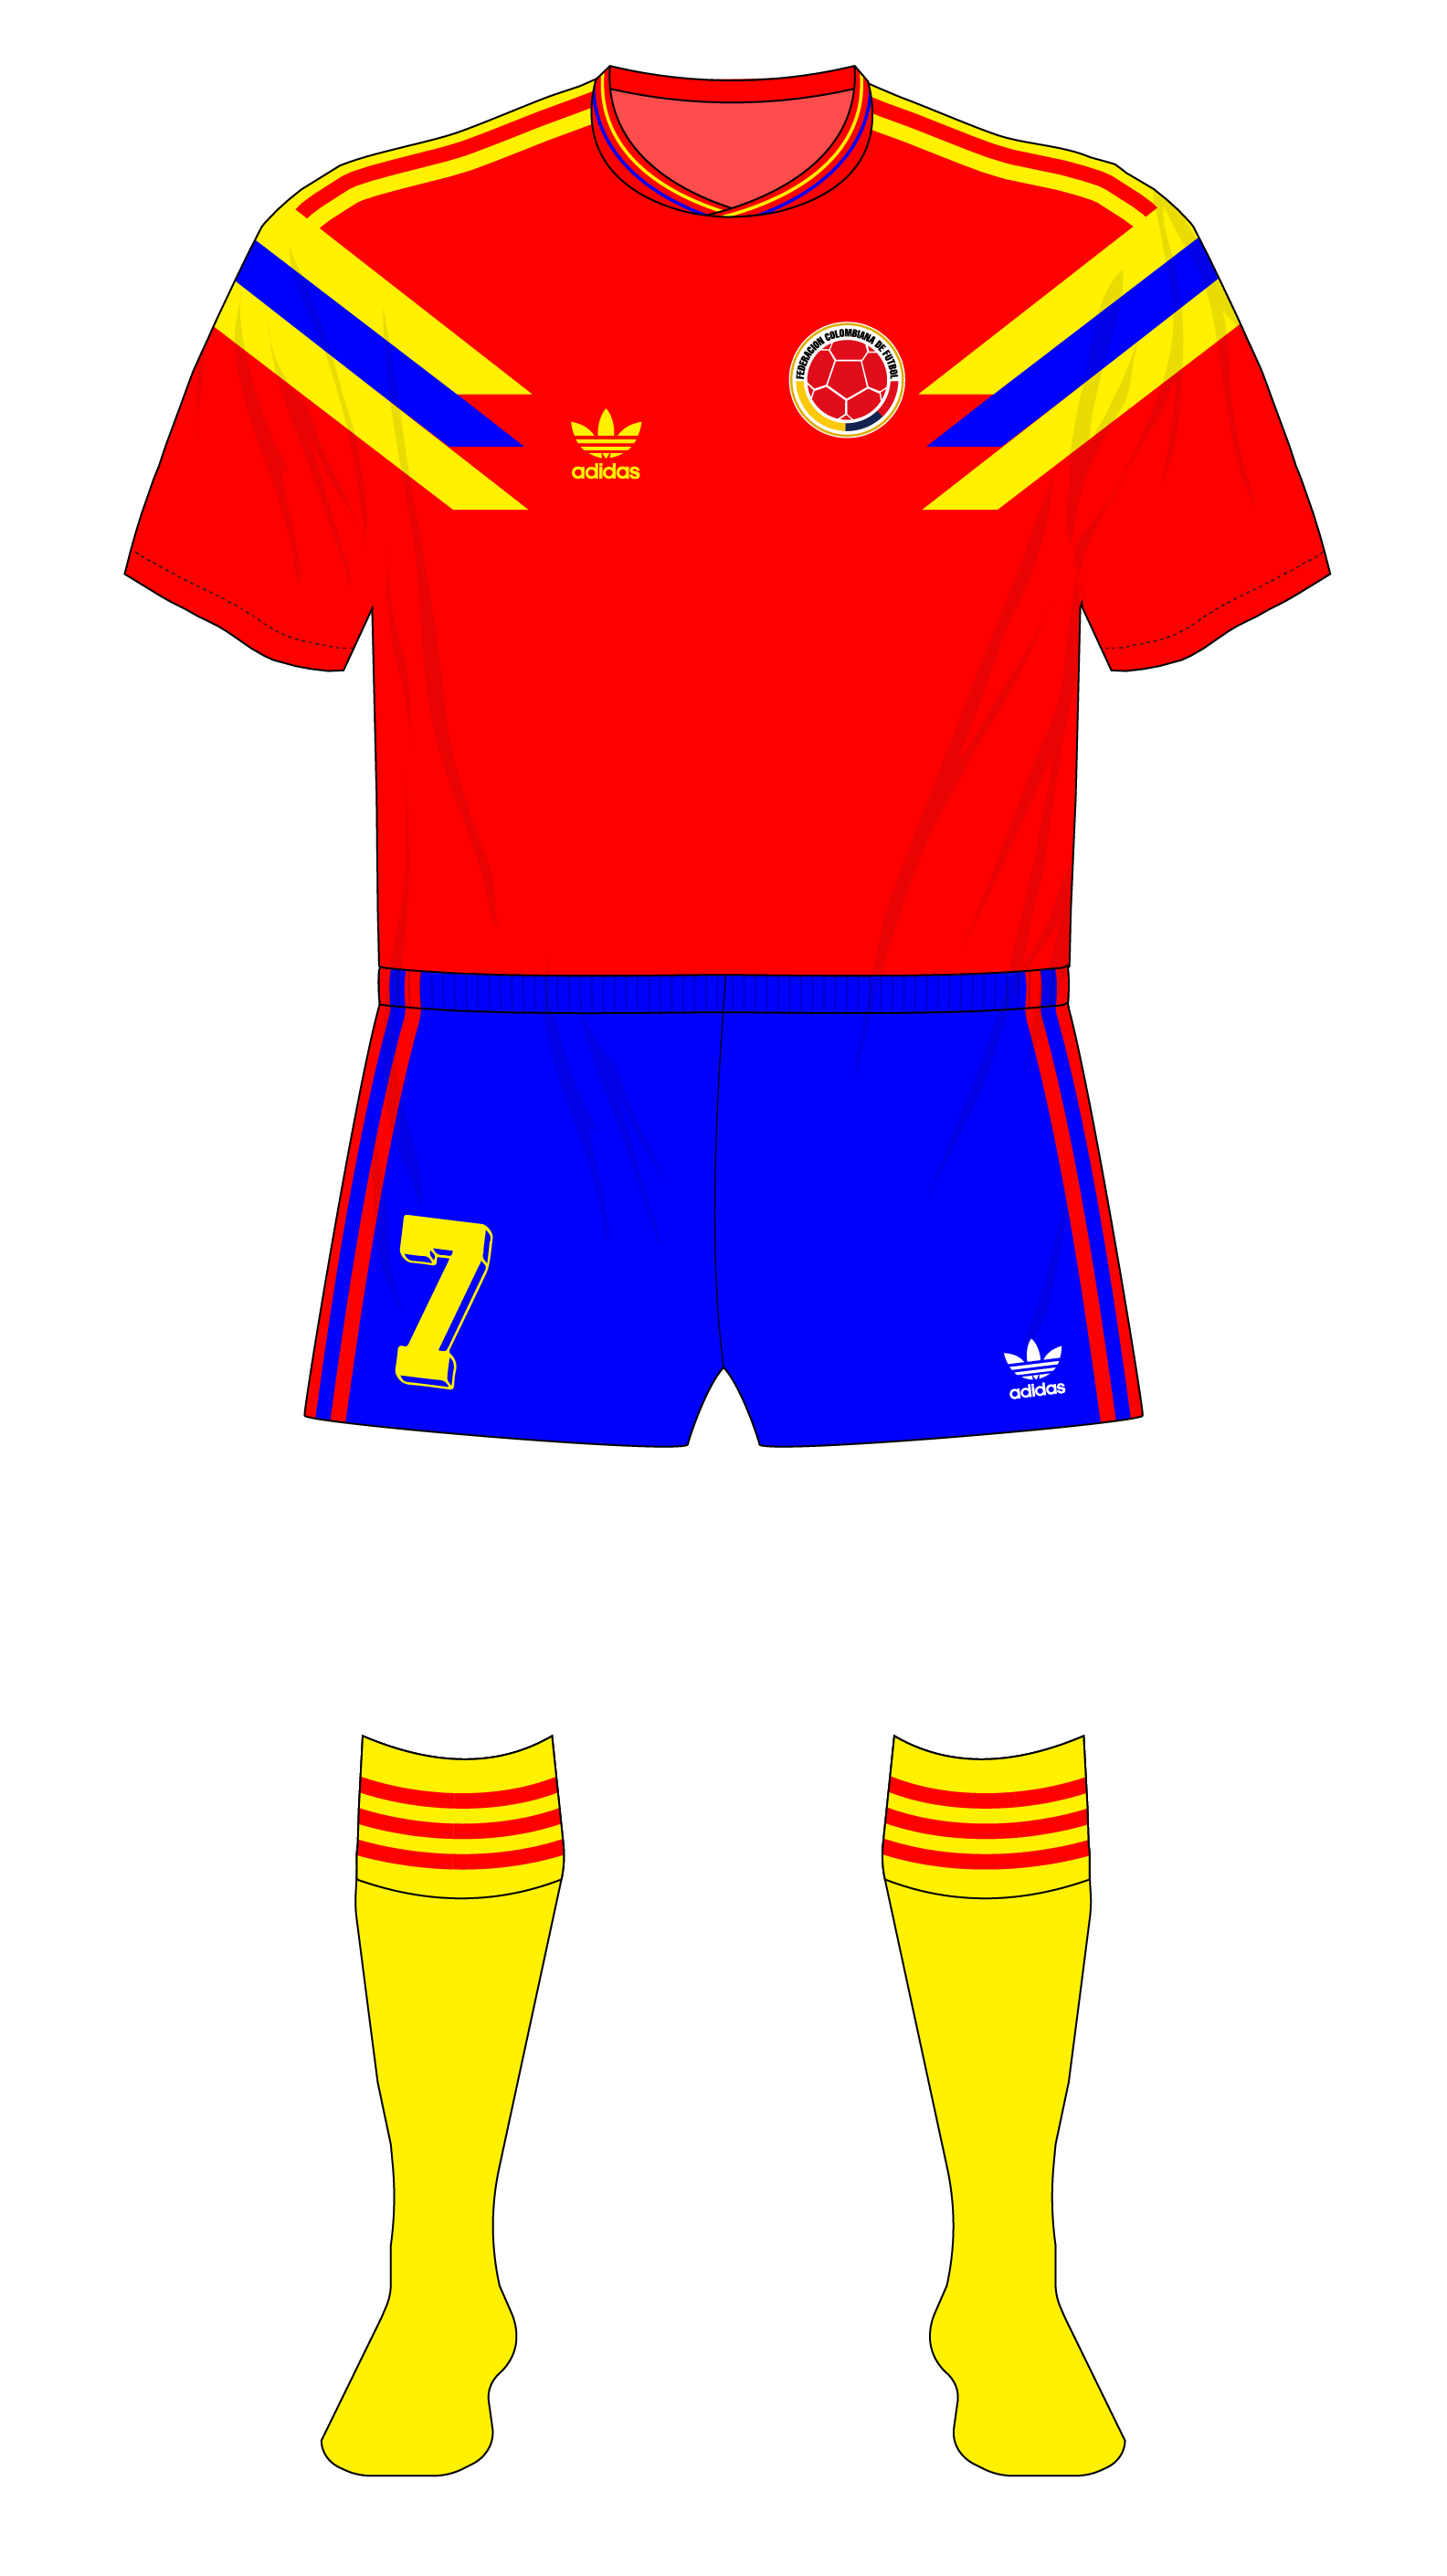 Agente de mudanzas atributo Ejercicio Colombia-1990-adidas-camiseta-Copa-Mundial-01 – MuseumofJerseys.com